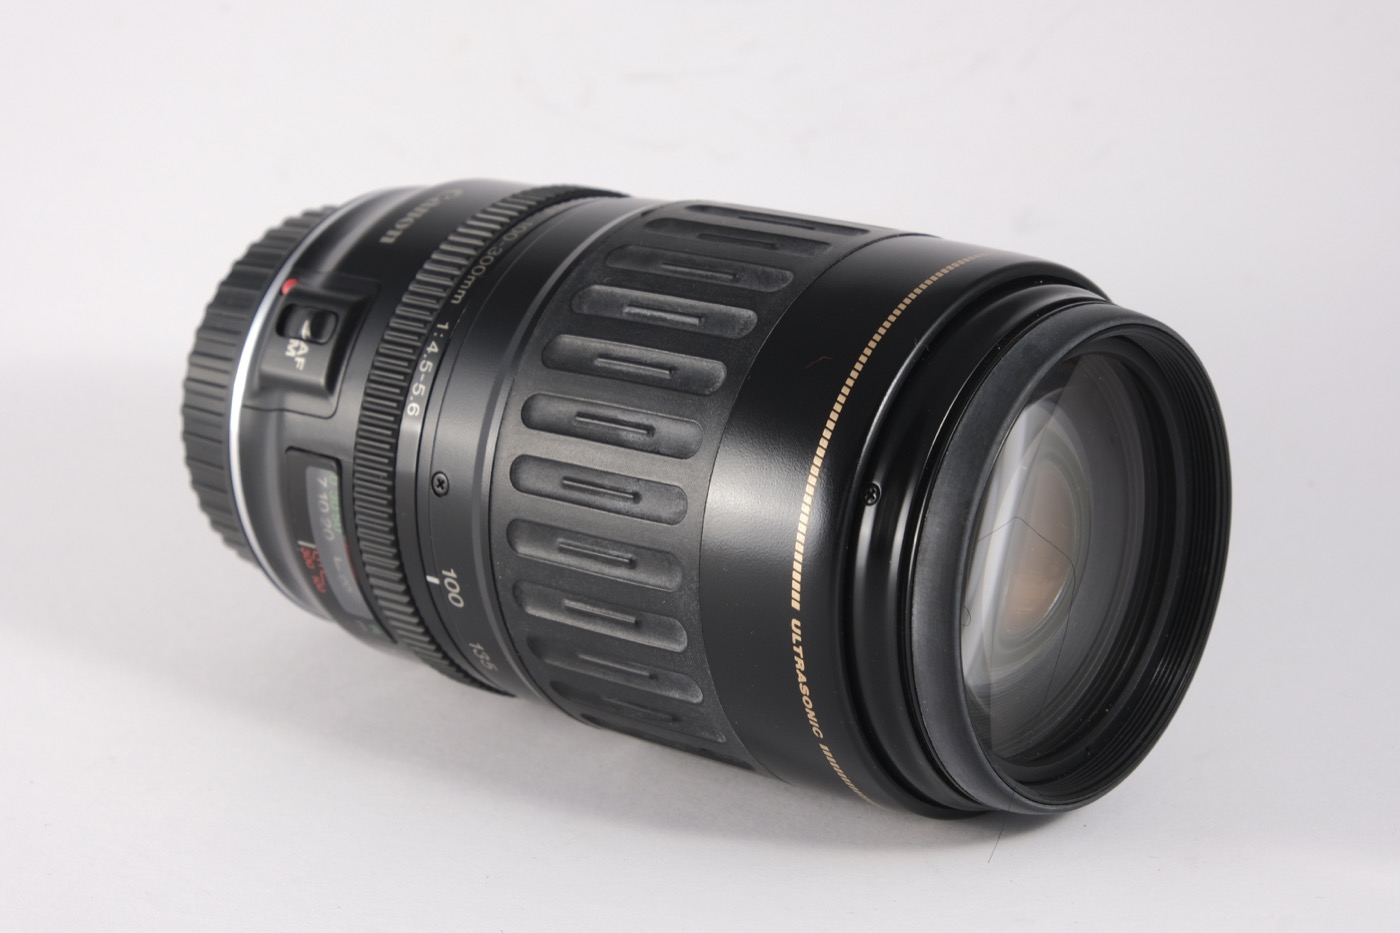 Canon EF 100-300mm f/4.5-f/5.6 USM zoom lens